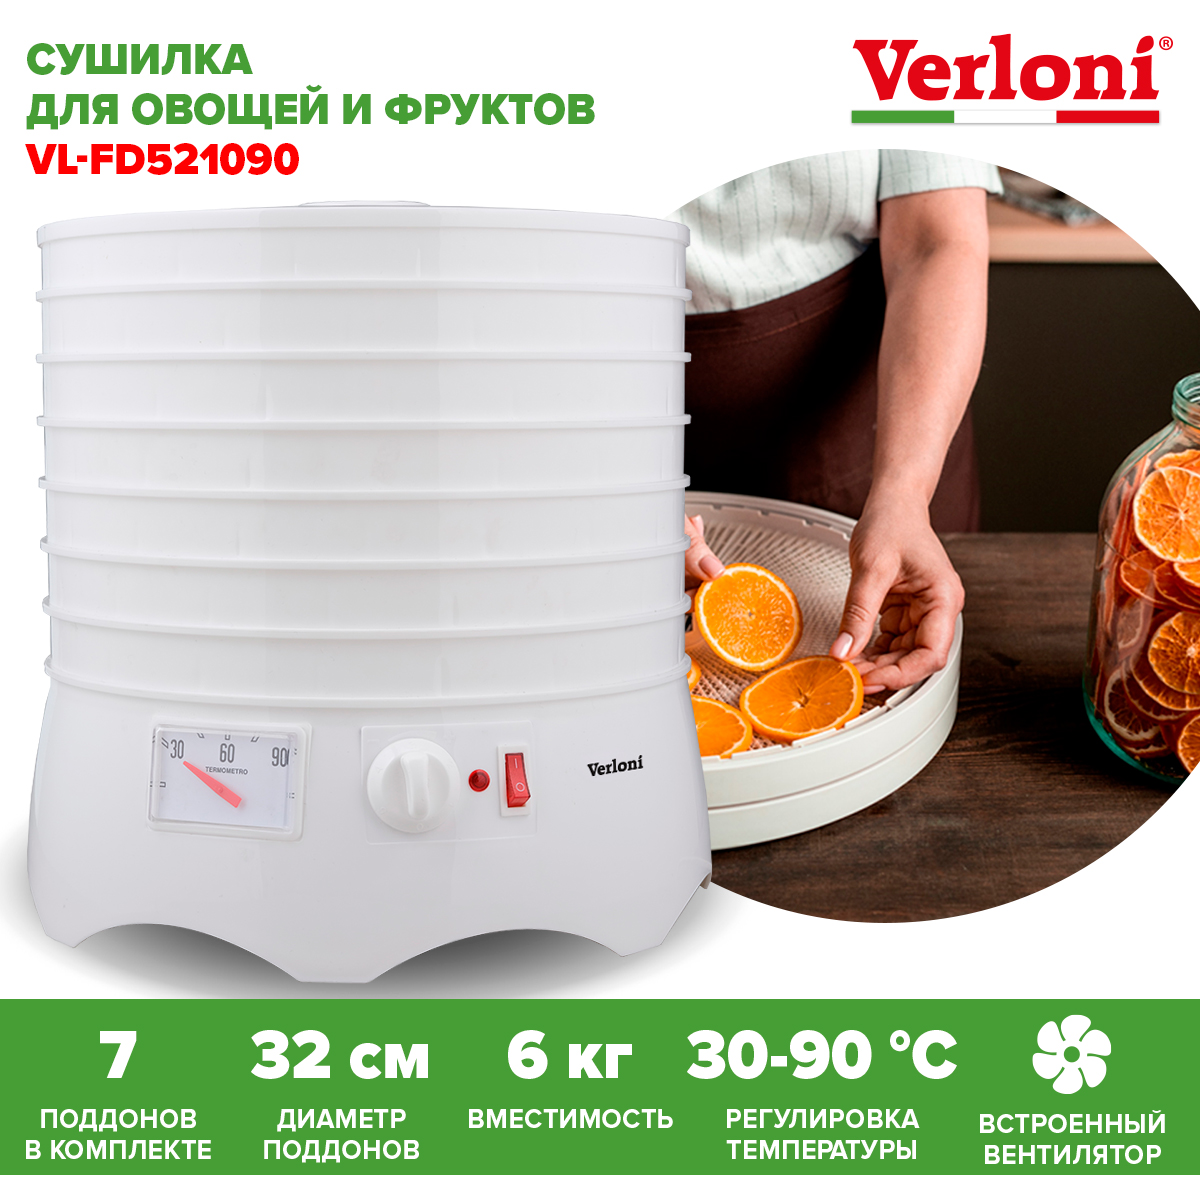 Сушилка для овощей и фруктов Verloni VL-FD521090 белая сушилка для овощей и фруктов vail vl 5105 белая